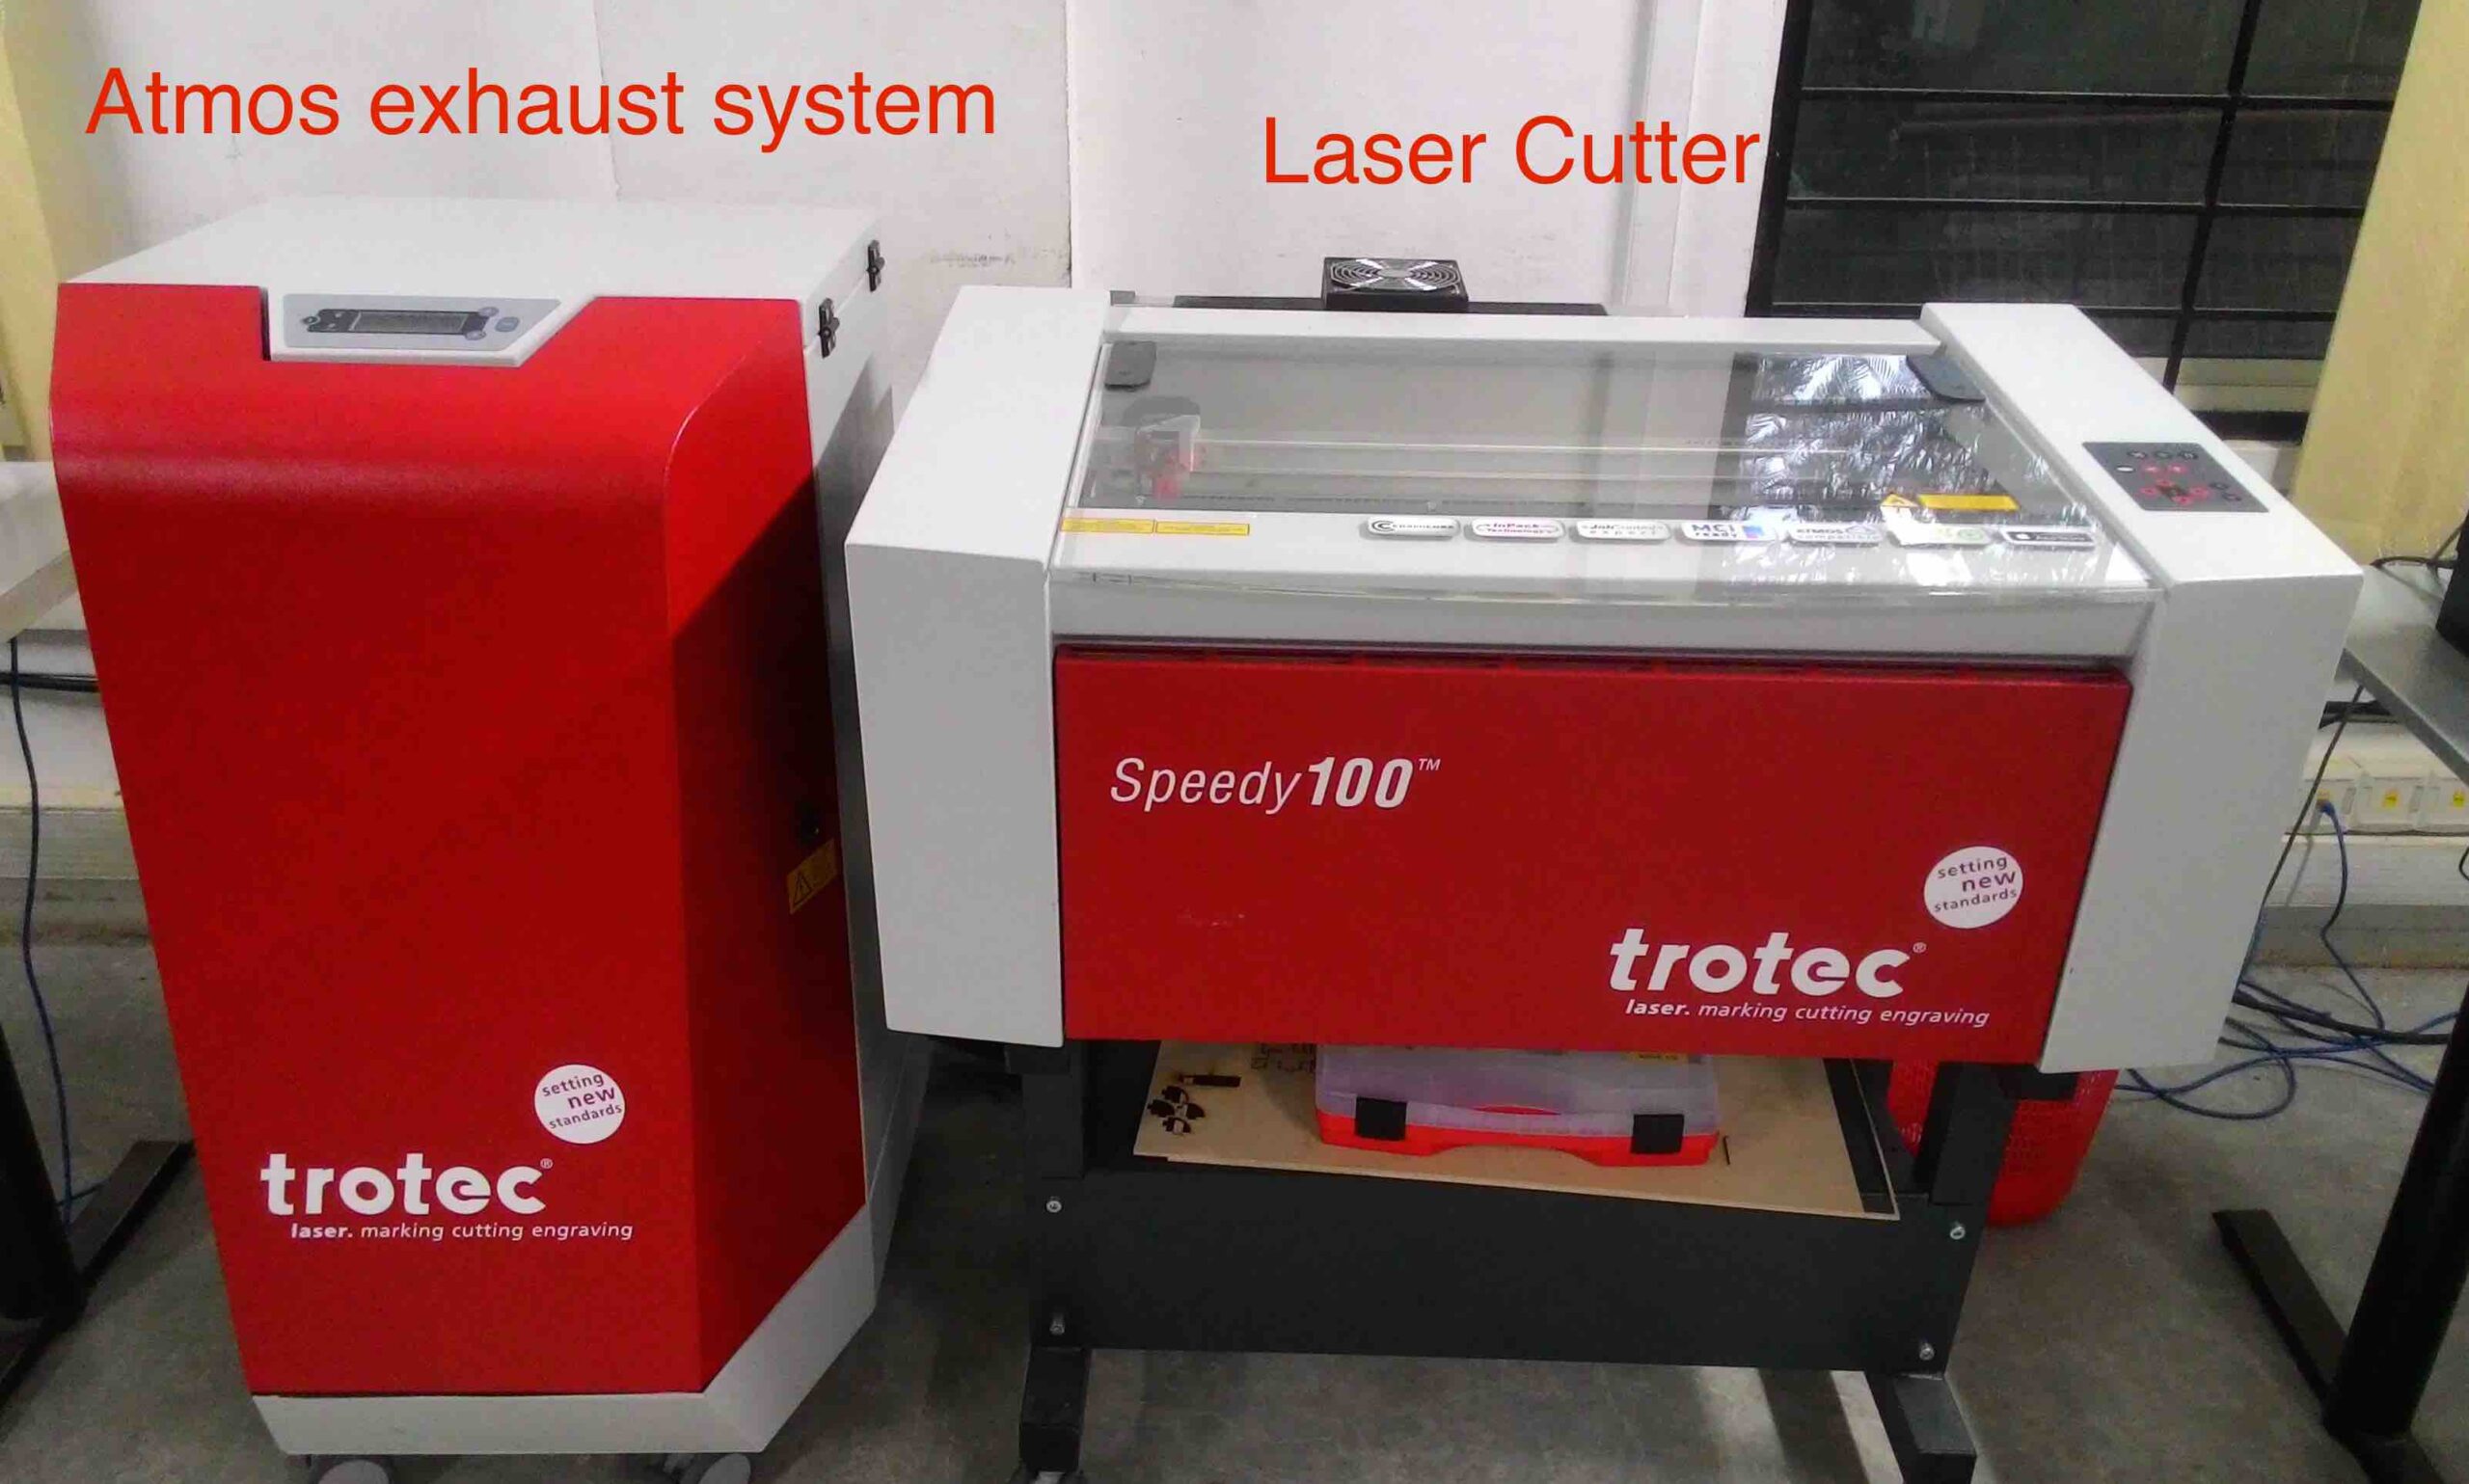 Trotec Laser - marking cutting engraving